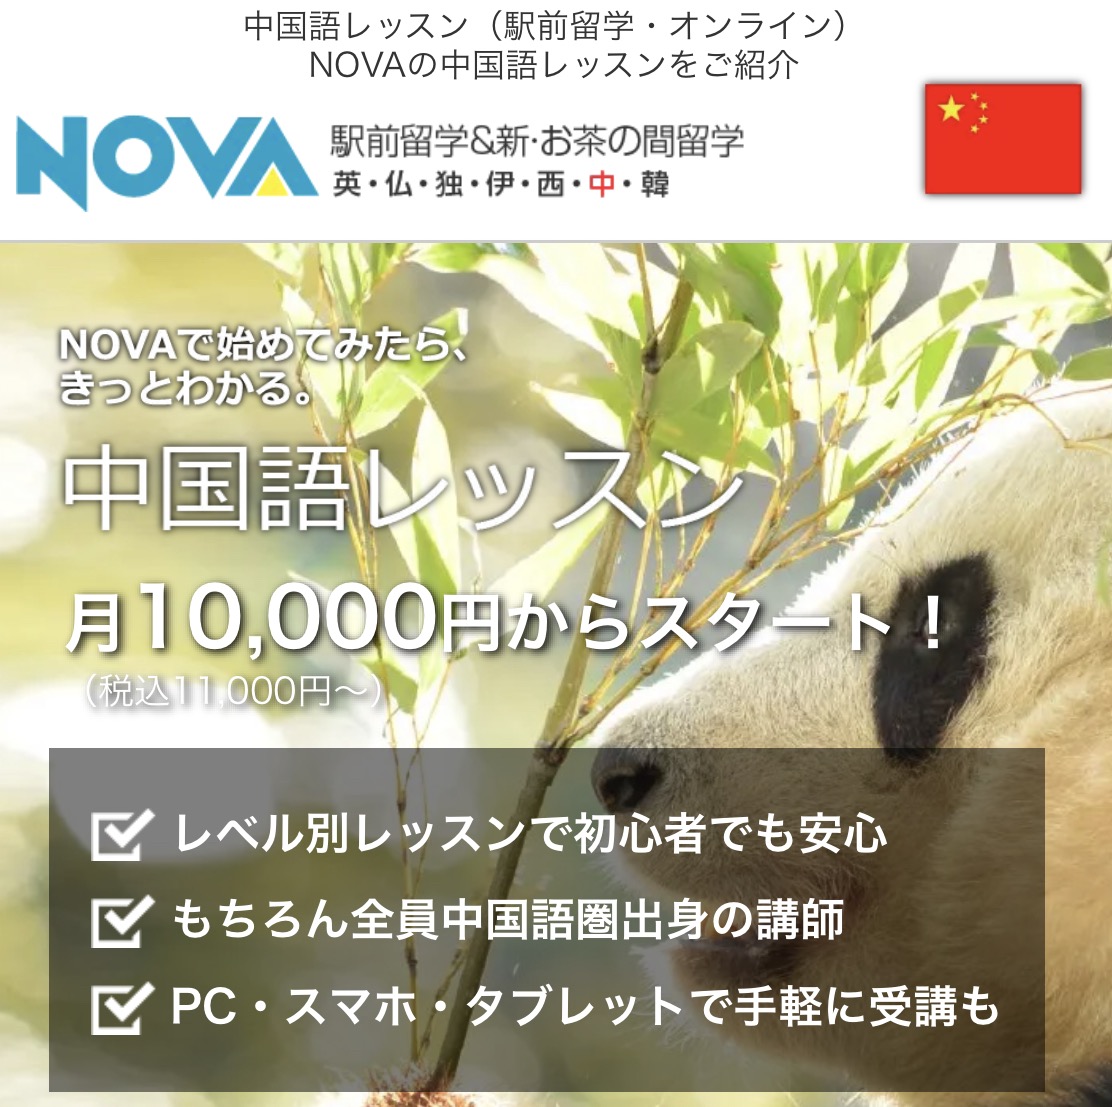 NOVA公式サイト